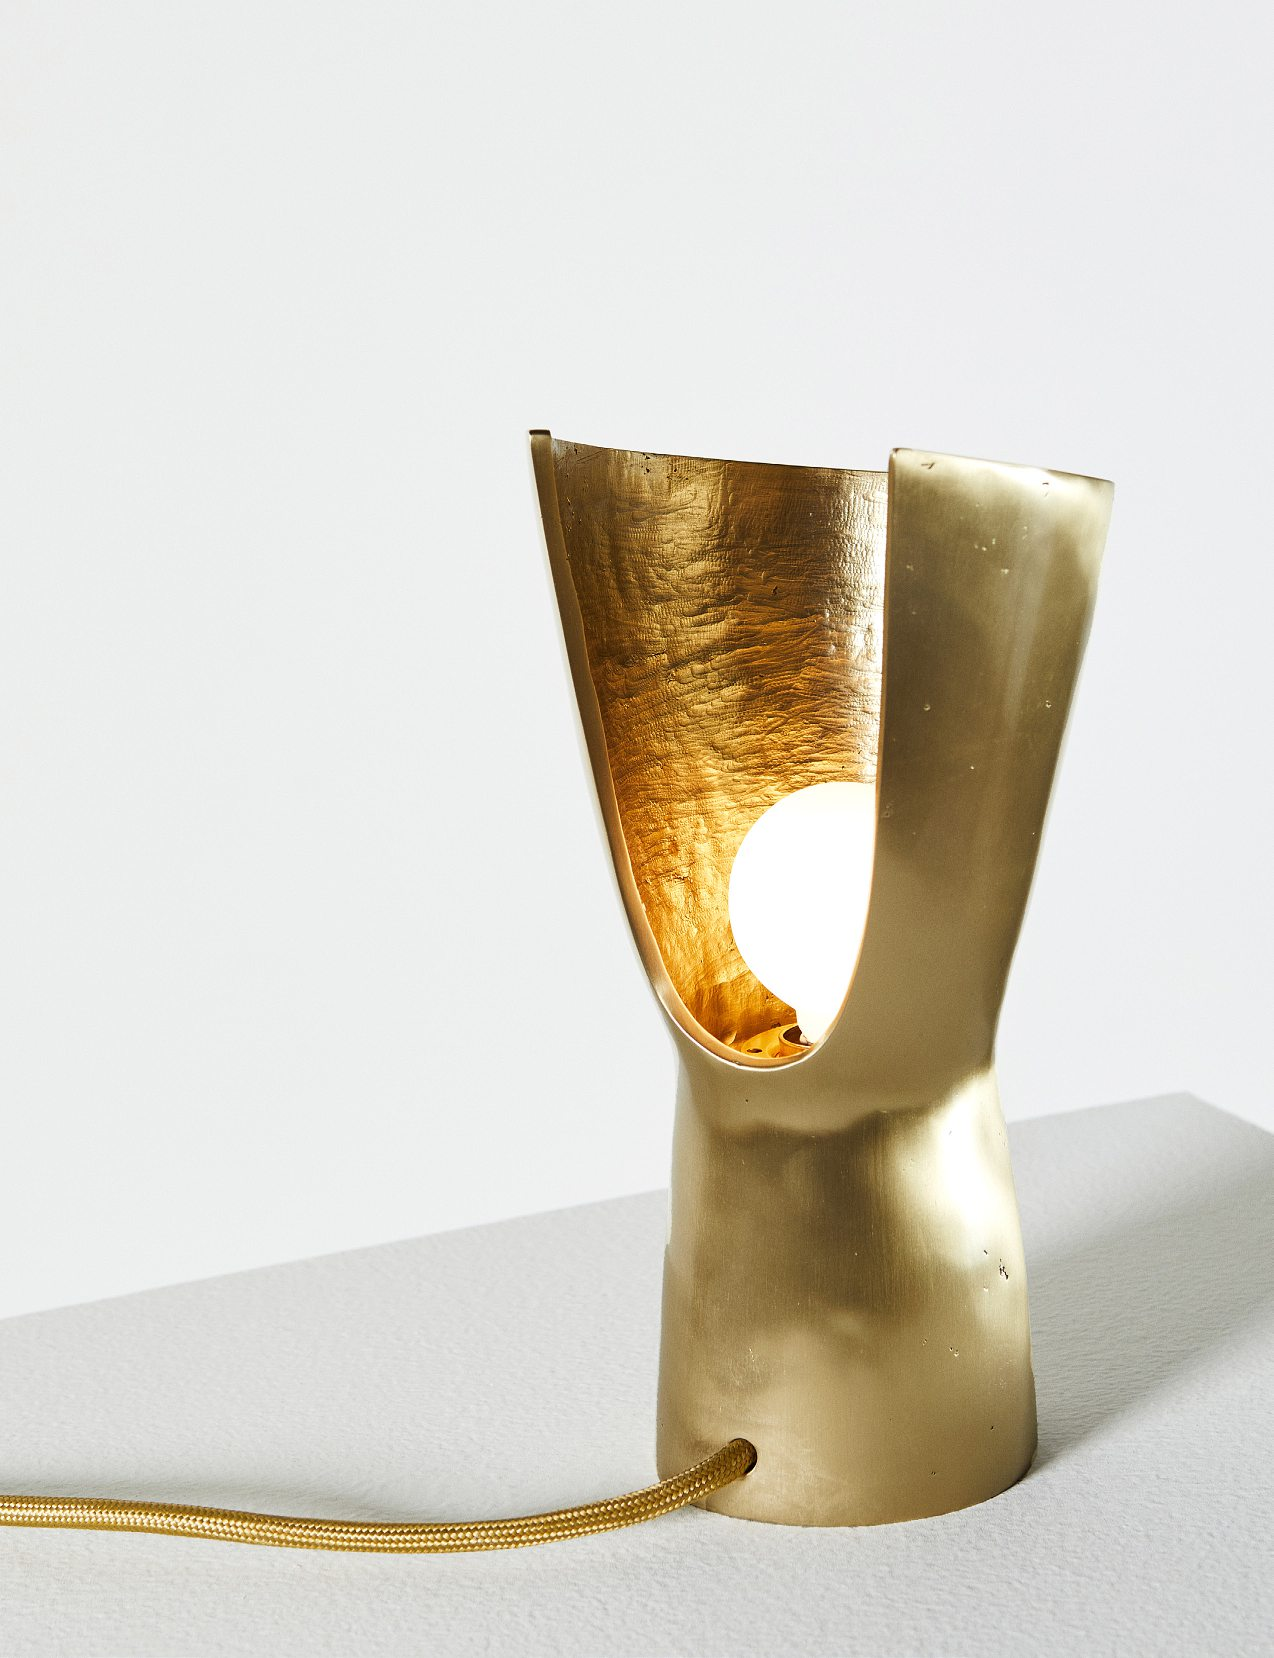 La lampe Zaka a été conçue par l’atelier en matières locales.DR